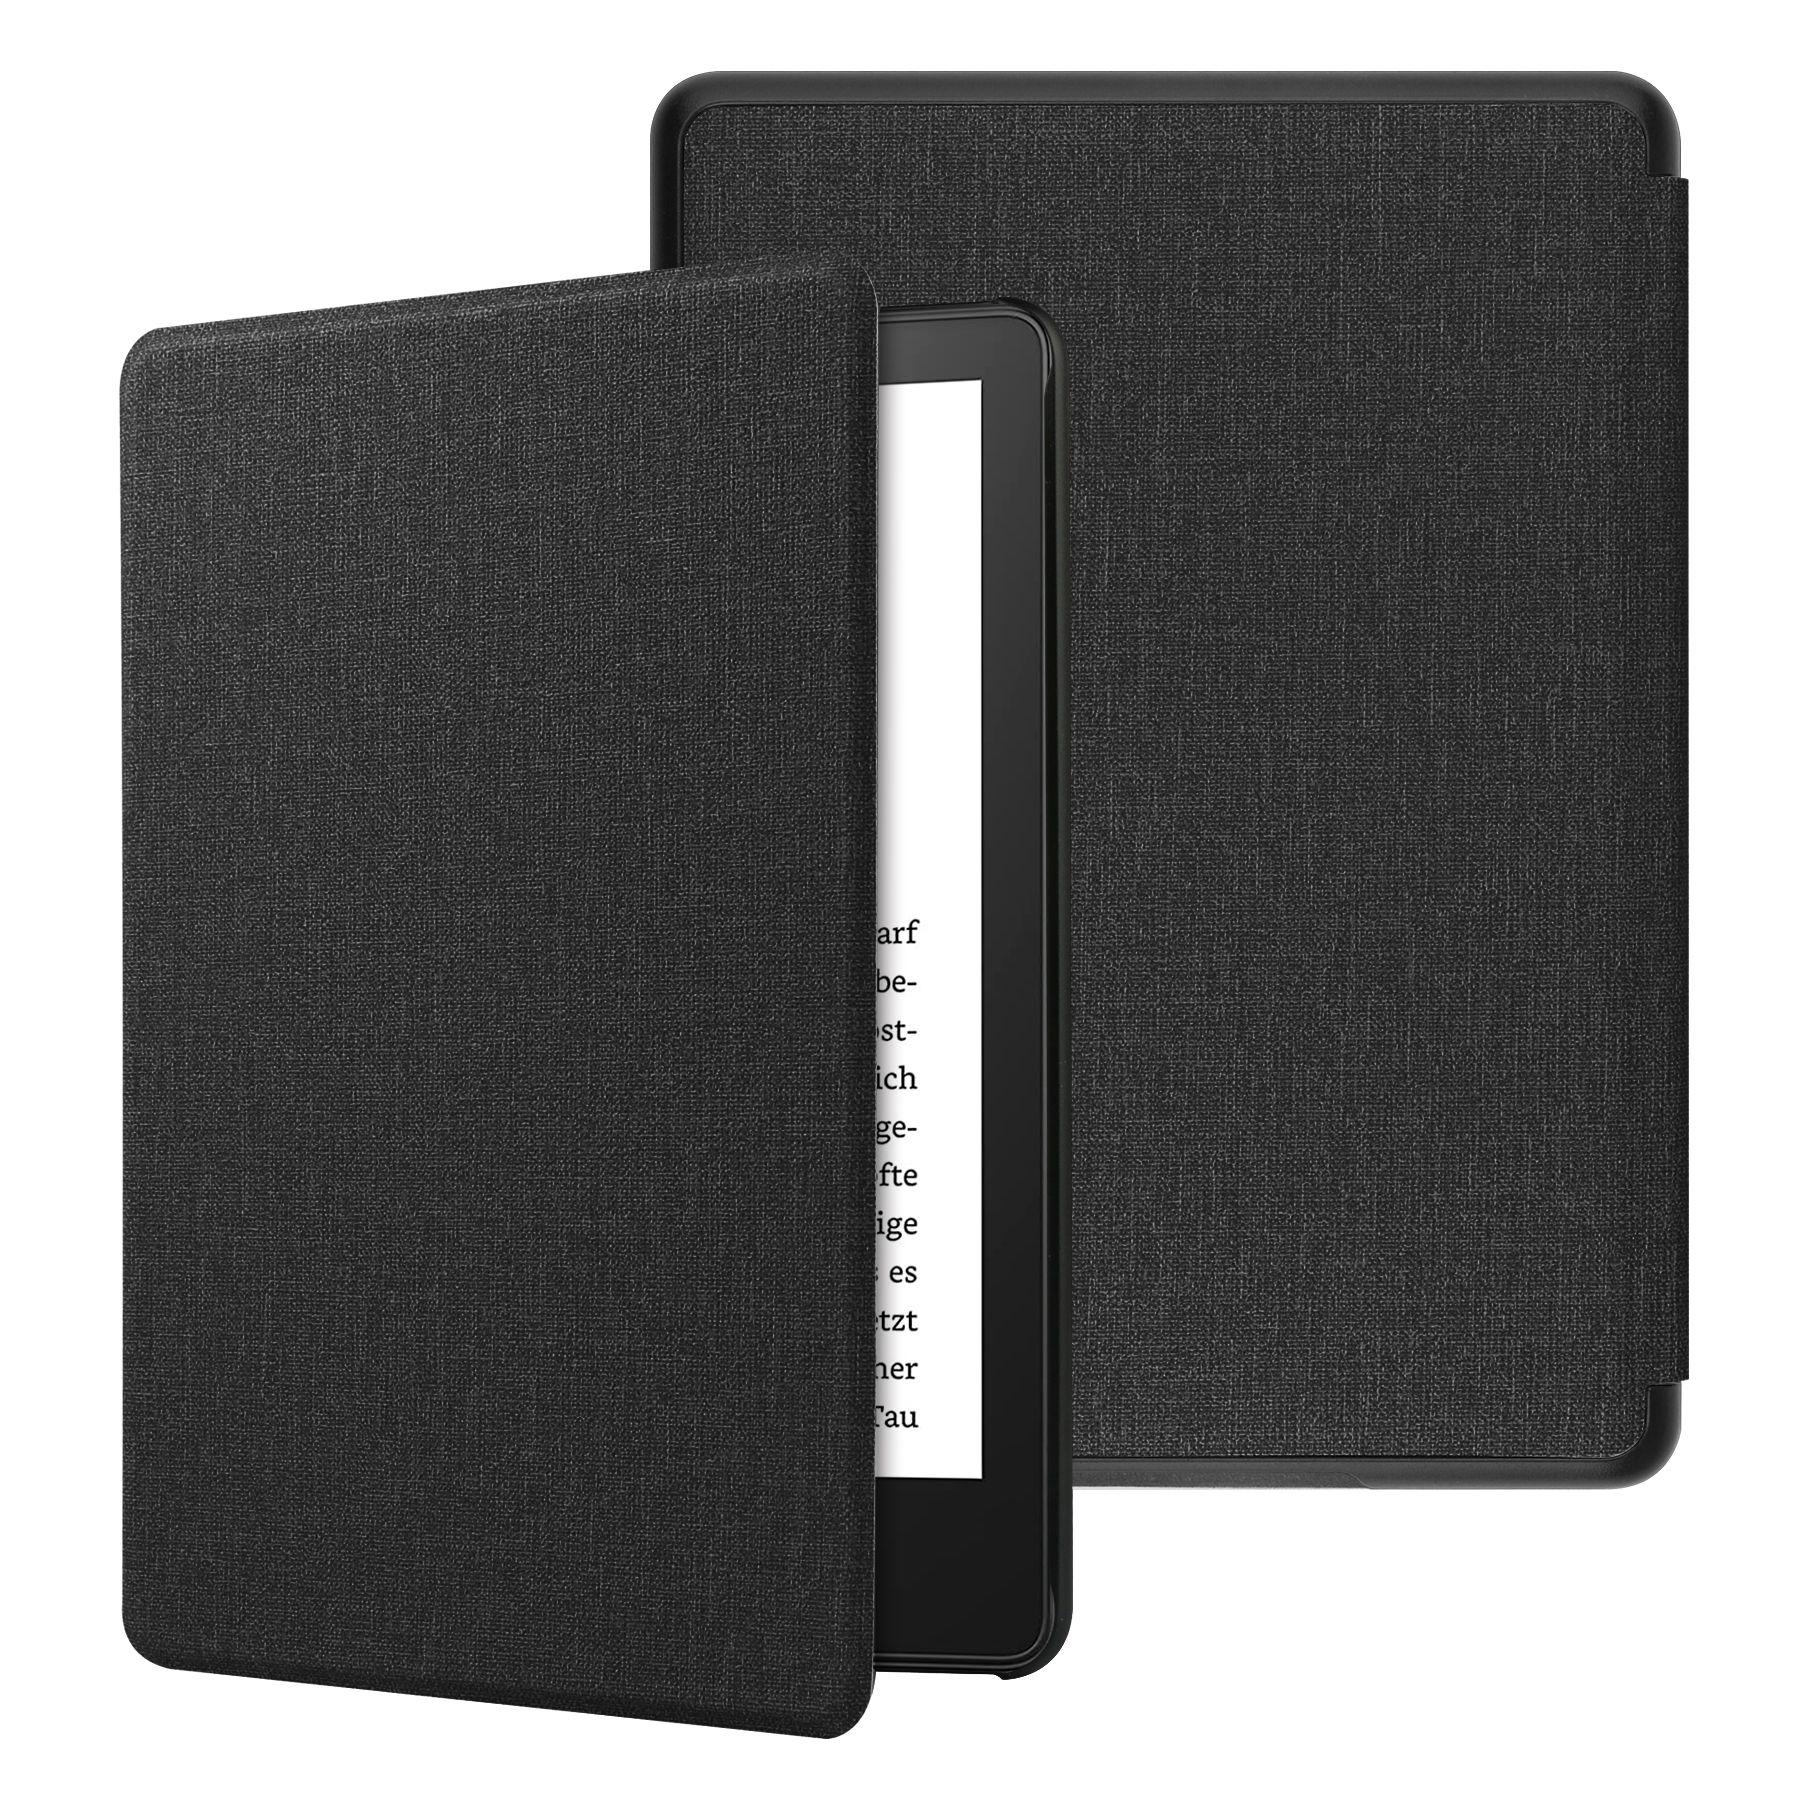 Case case Amazon Kindle 10 2019 K658 6 inch - type 2